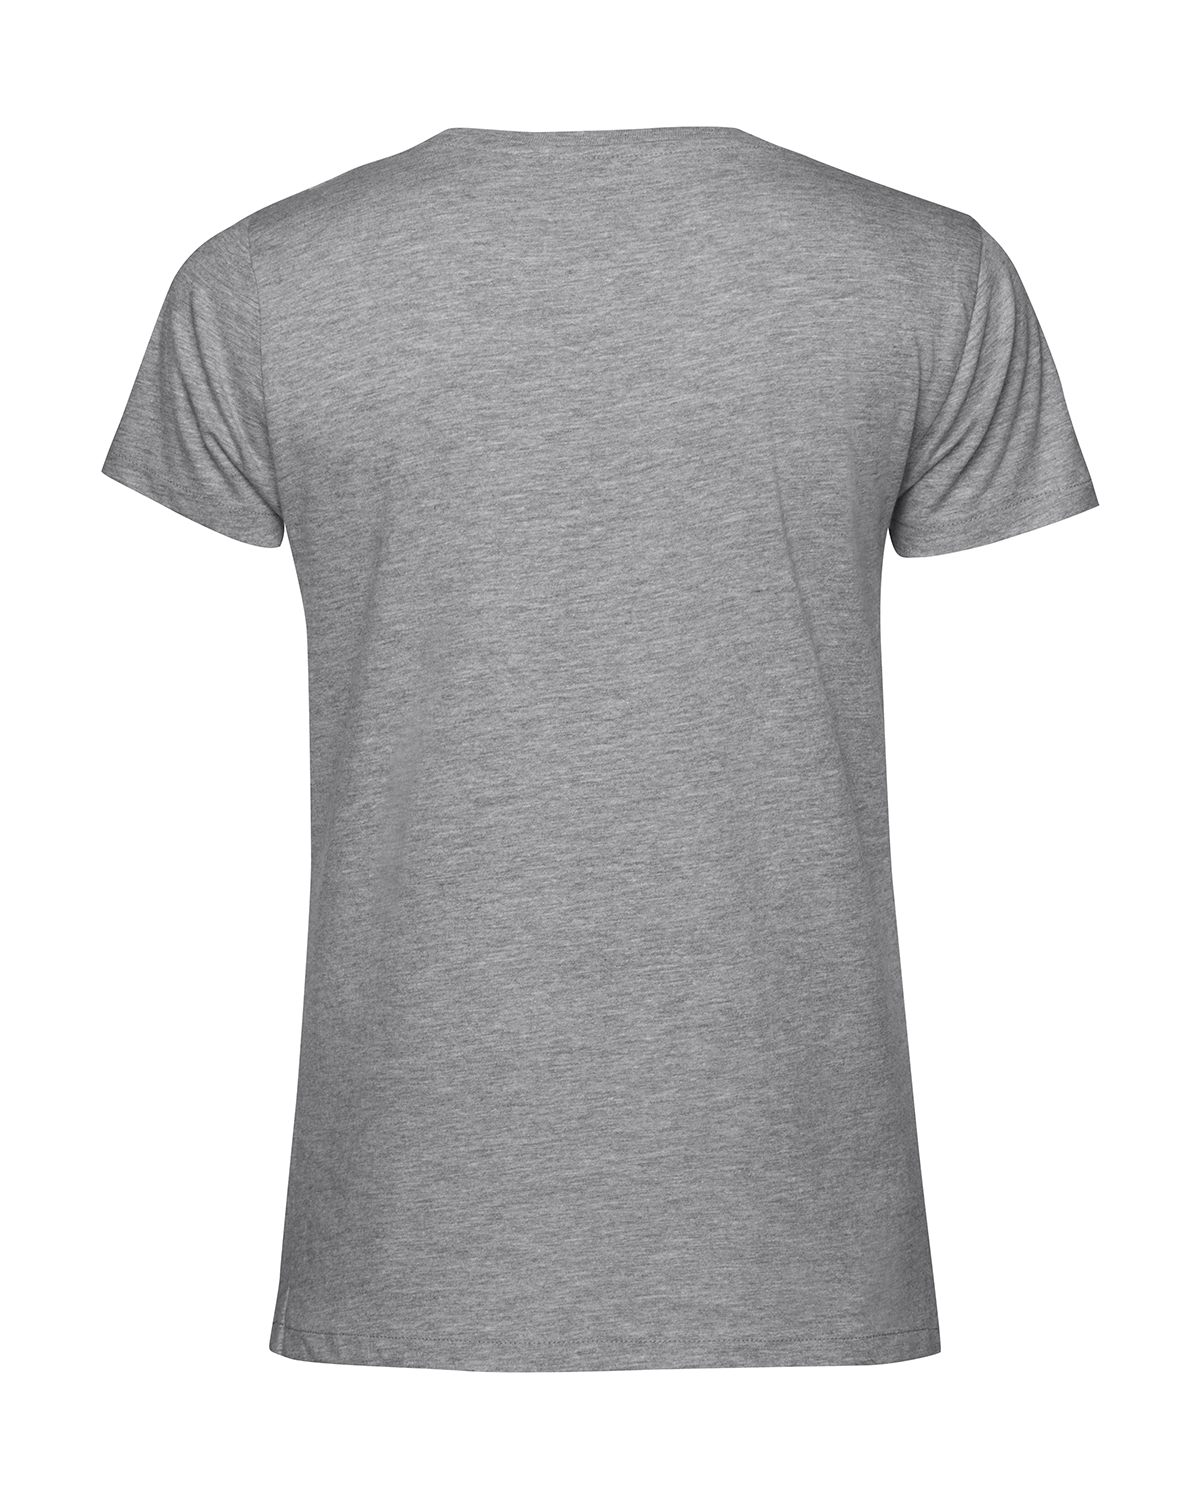 Nachhaltiges T-Shirt Damen 2Takt - Wenn Du keine besitzt SR2